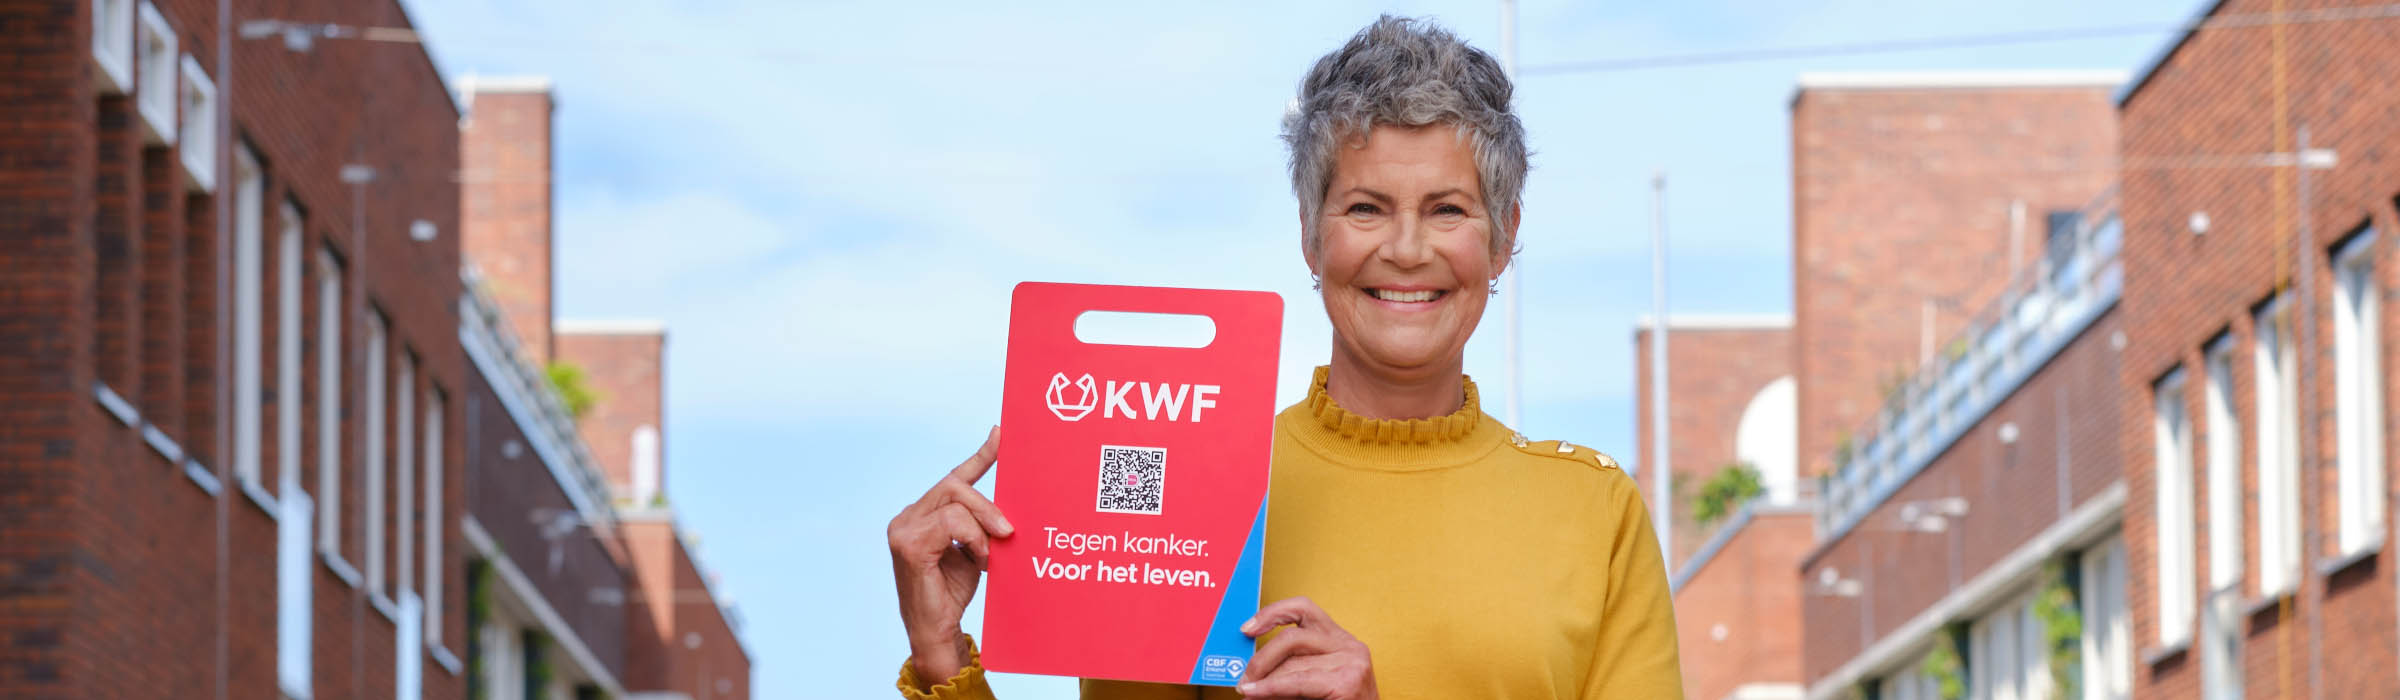 KWF Kanker Bestrijding - vrouw op straat met collectebord